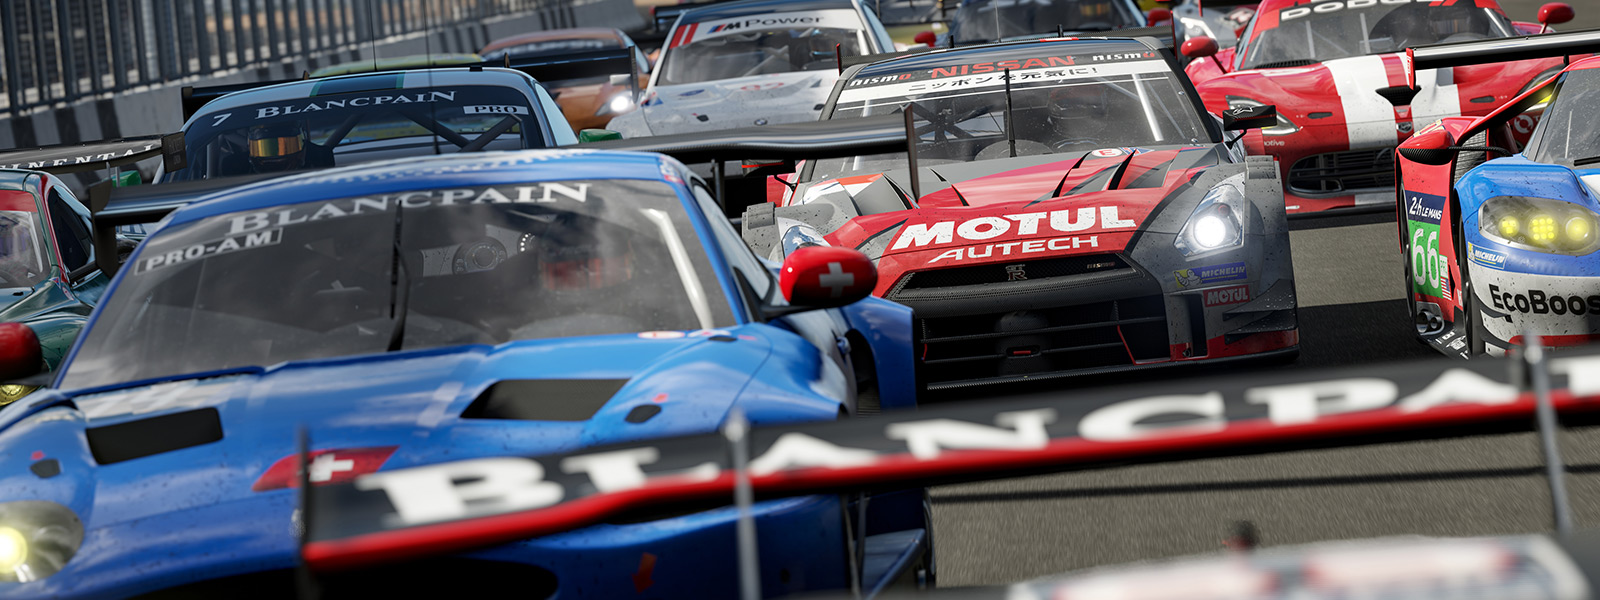 Elölnézet az első sorról egy Forza-verseny rajtjánál a Forza Motorsport 7 játékból